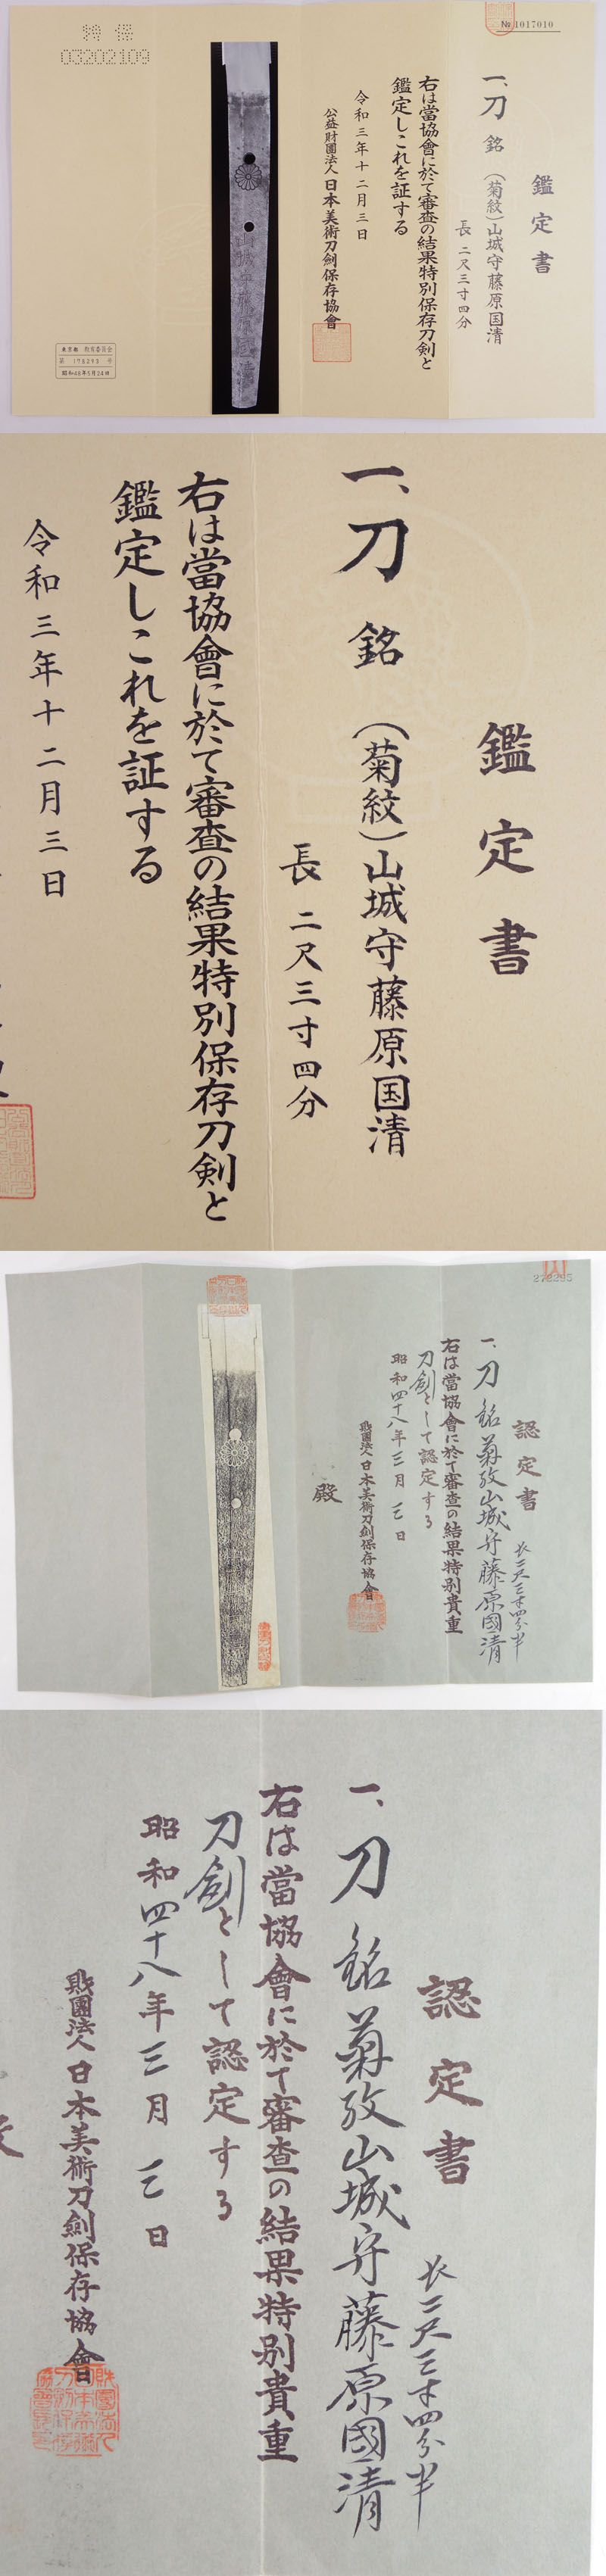 刀　(菊紋)山城守藤原国清 (新刀上々作) (業物) (堀川国広の門人) Picture of Certificate